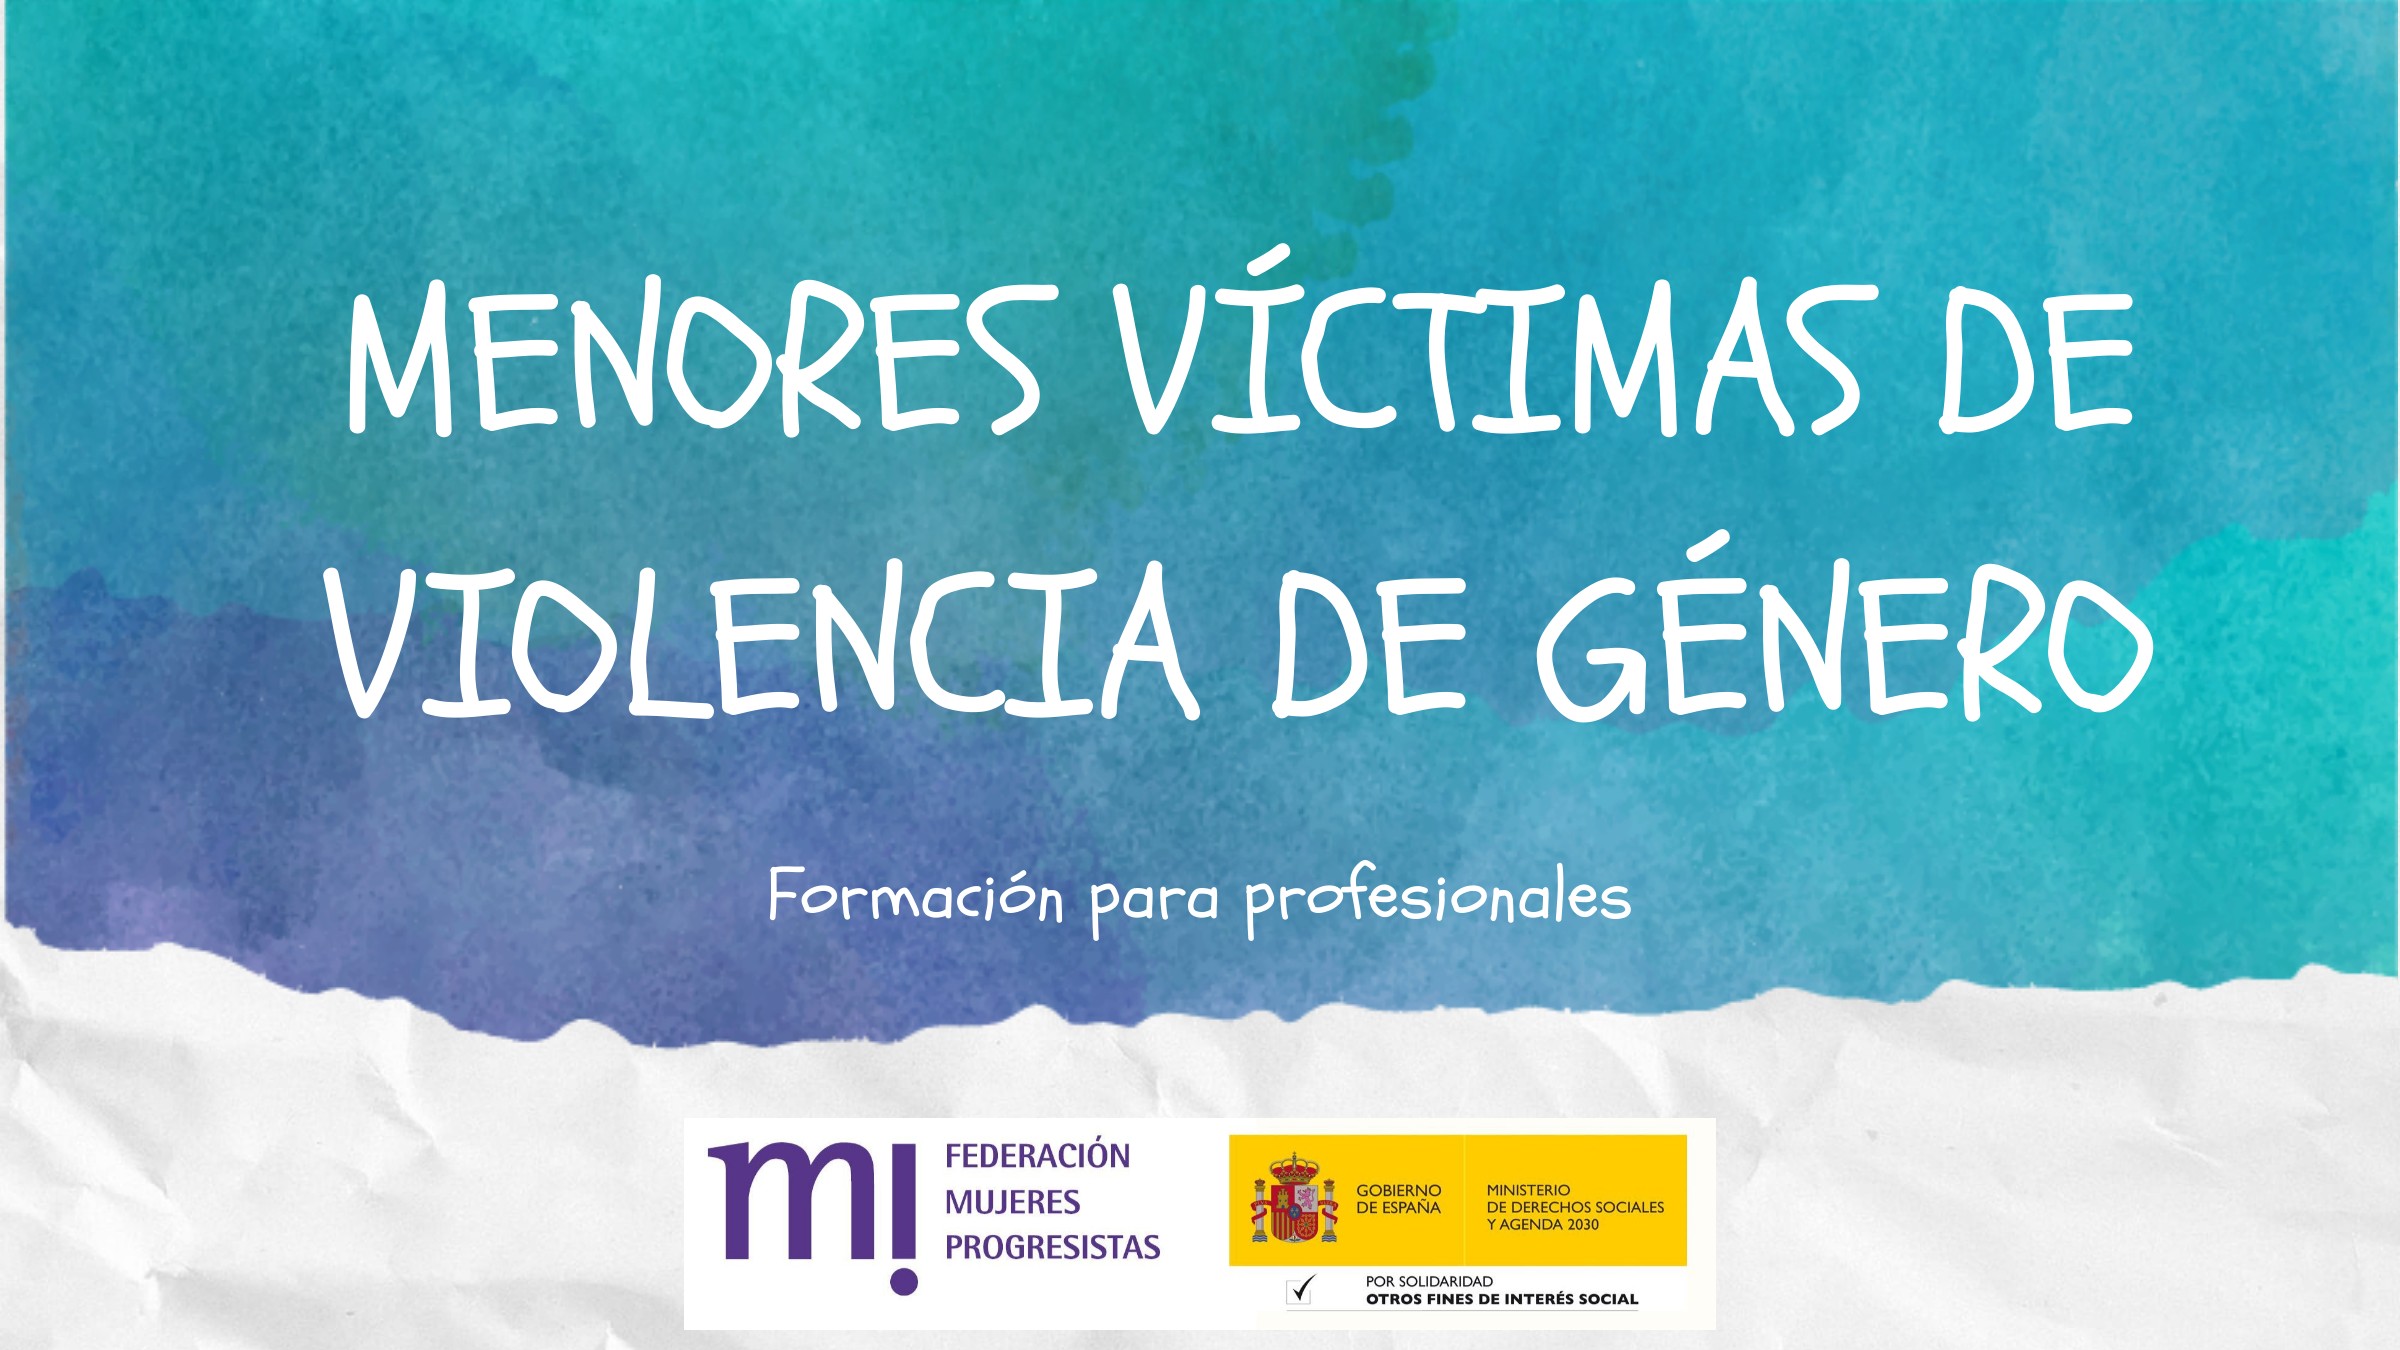 Course Image MENORES VÍCTIMAS DE VIOLENCIA DE GÉNERO